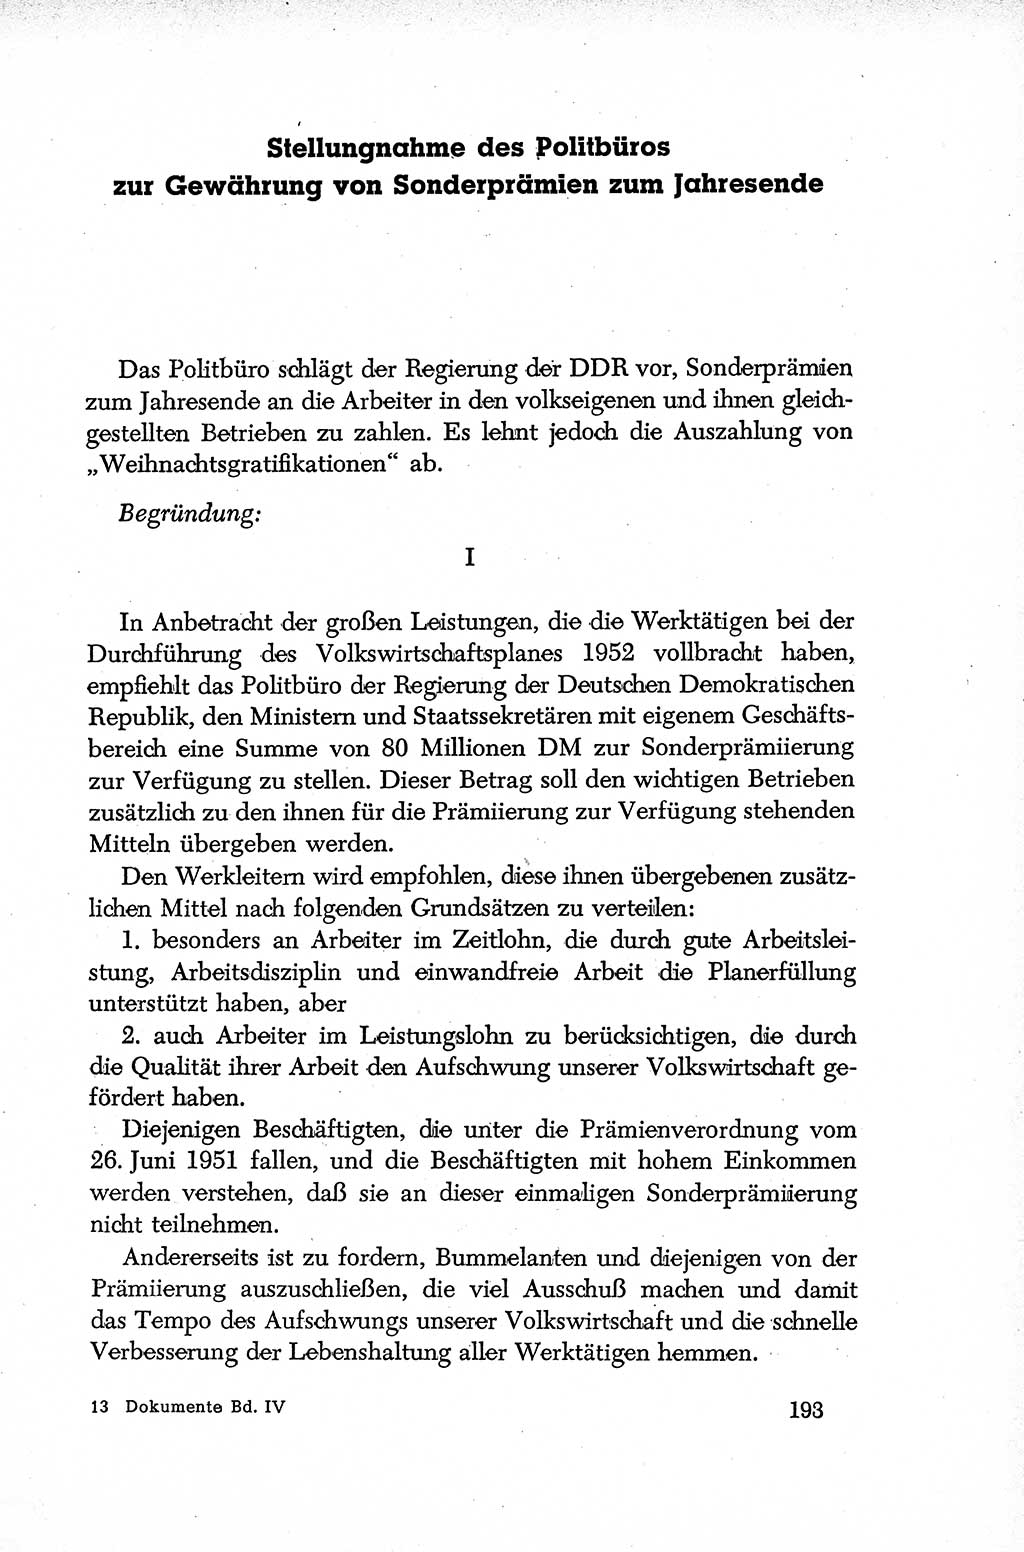 Dokumente der Sozialistischen Einheitspartei Deutschlands (SED) [Deutsche Demokratische Republik (DDR)] 1952-1953, Seite 193 (Dok. SED DDR 1952-1953, S. 193)